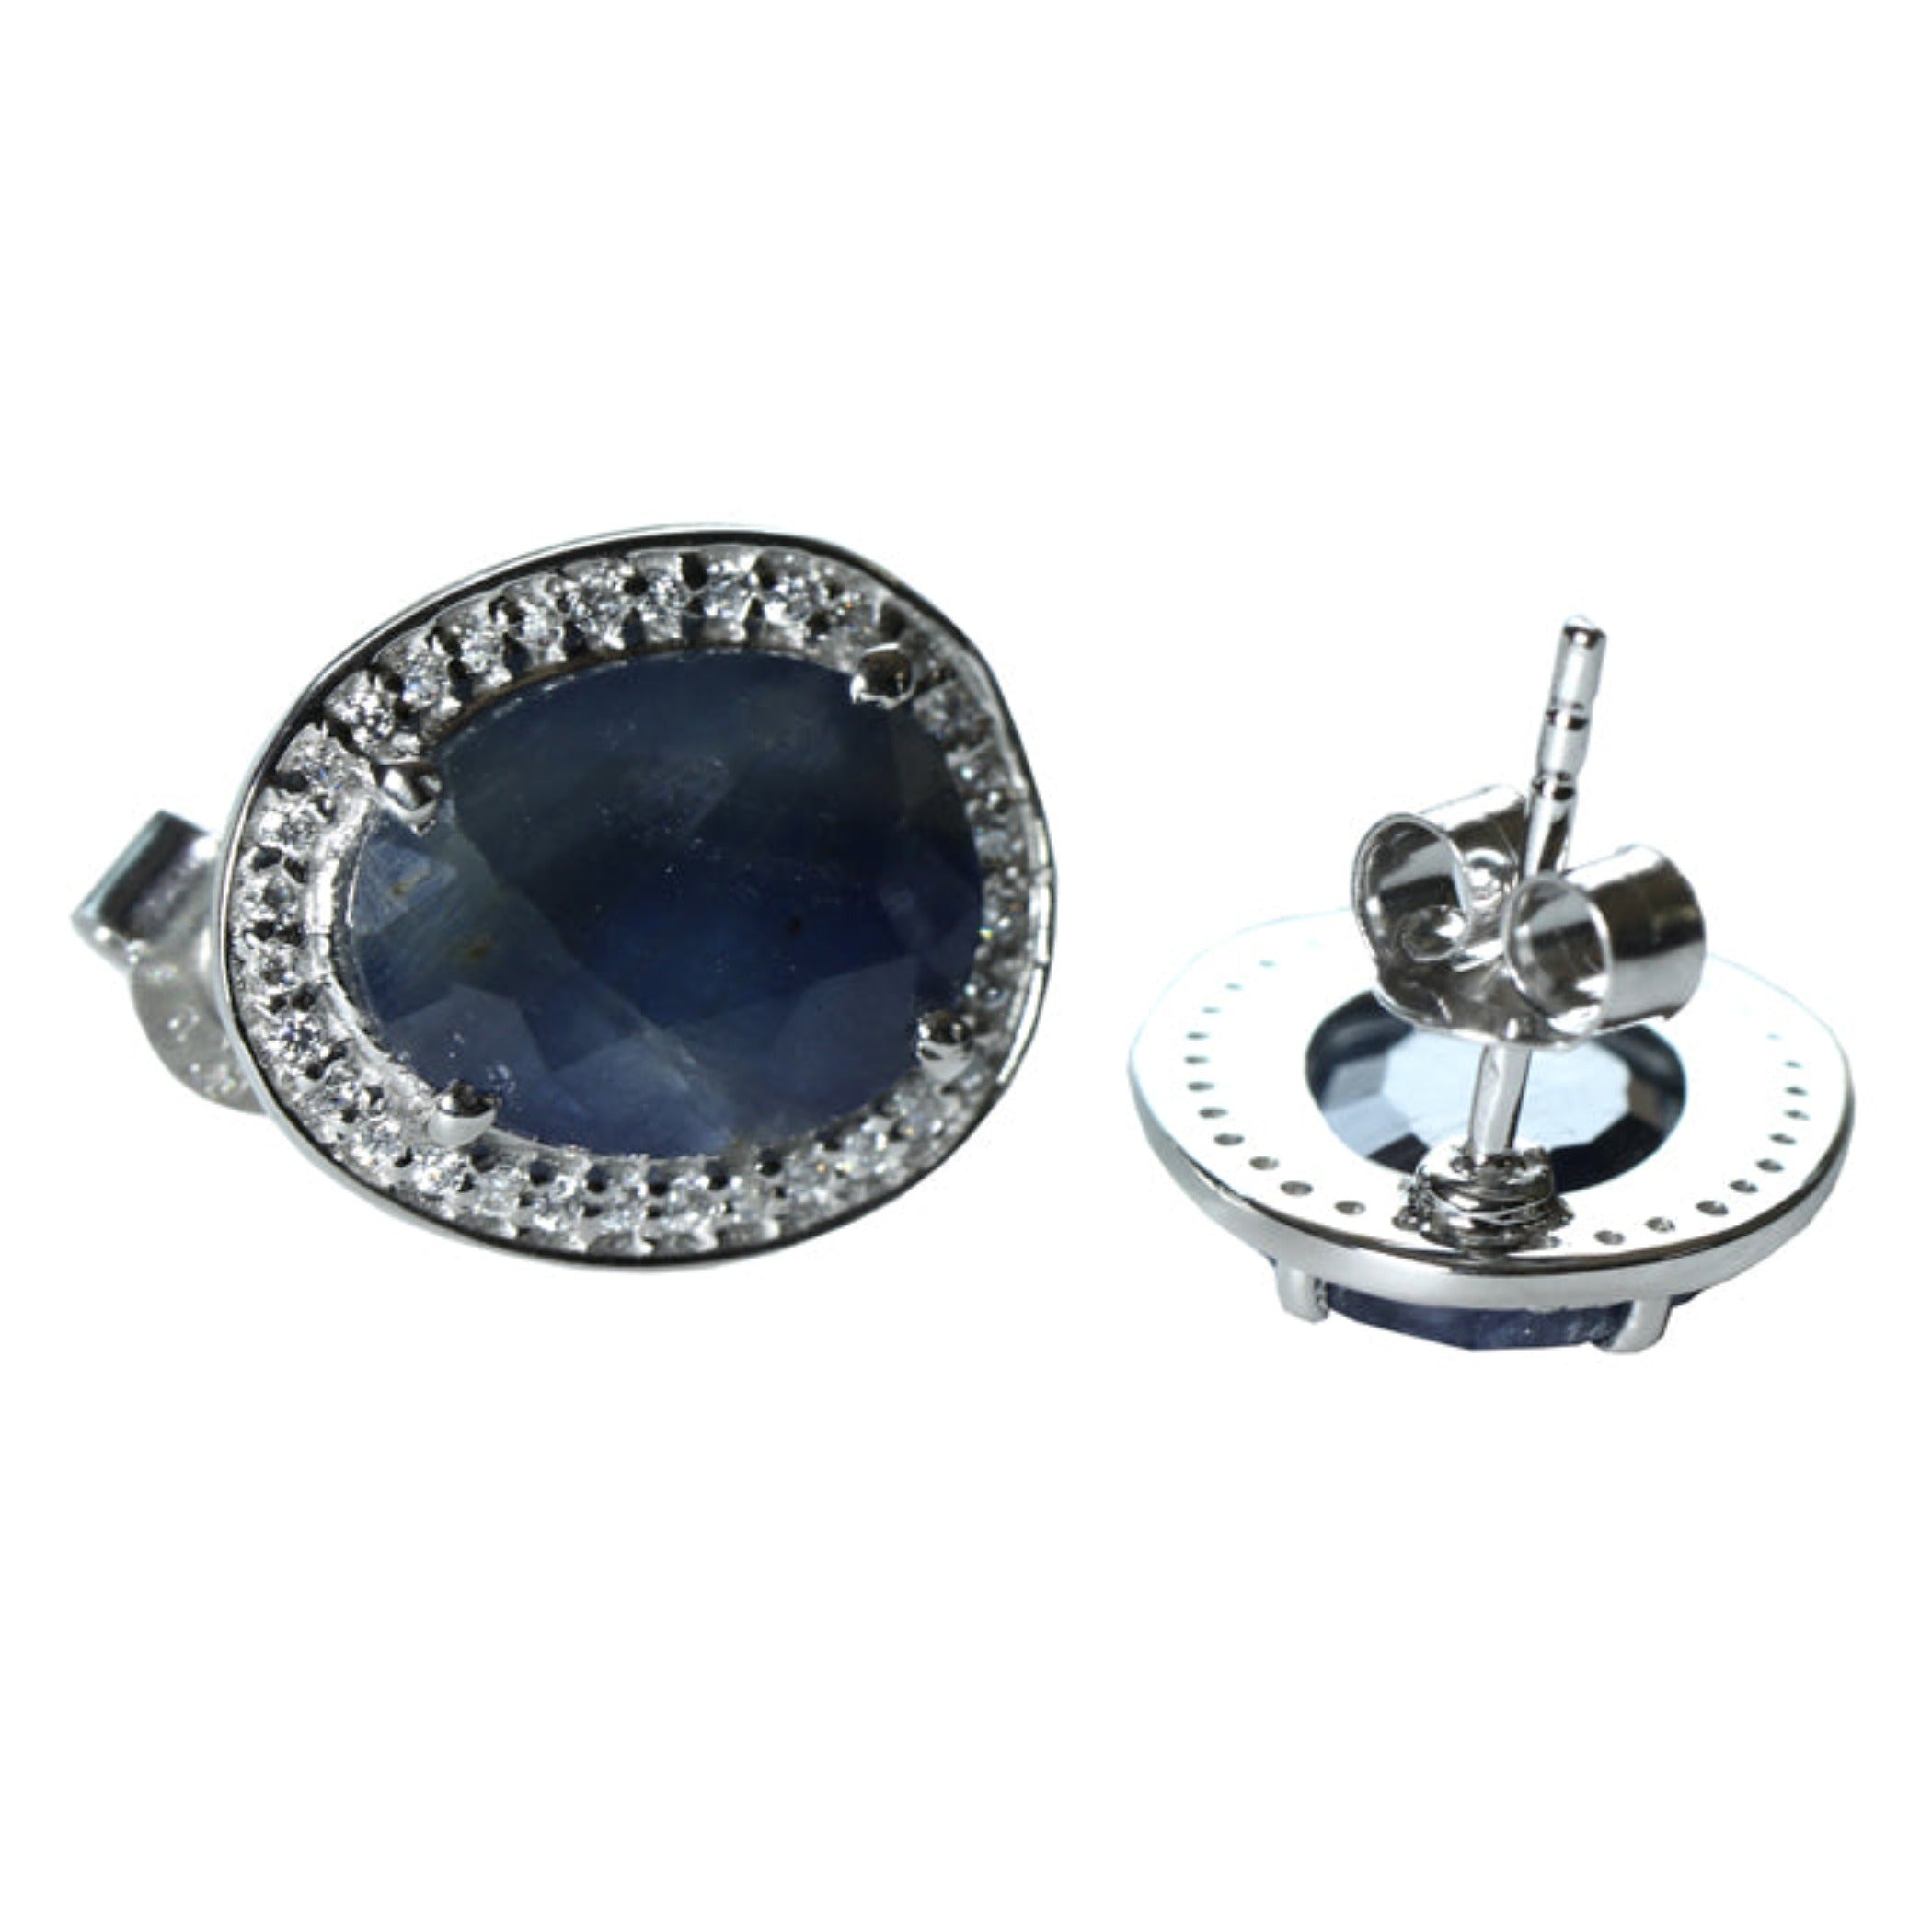 Blisse Allure 925 Sterling Sapphire Cz Silver Stud Earrings For Women